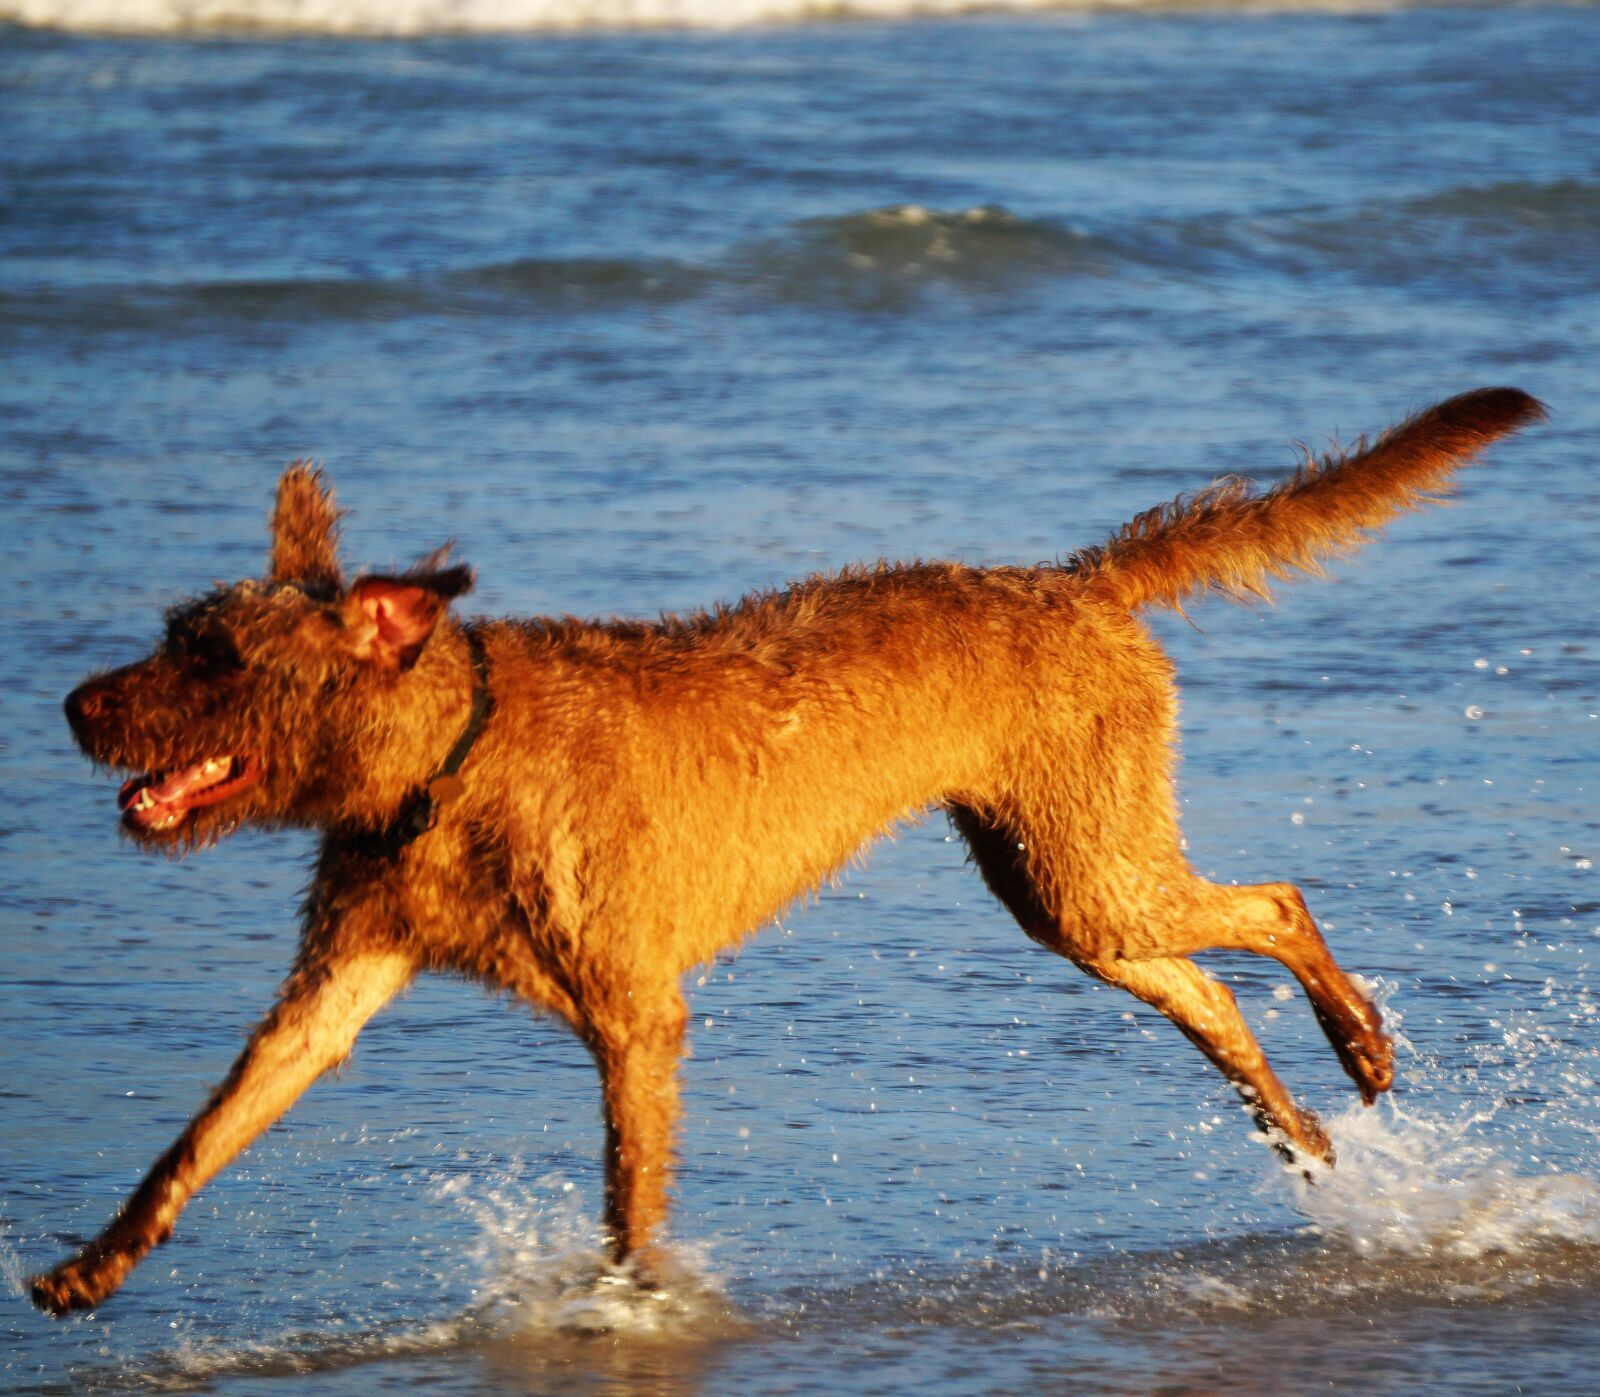 Sony Alpha a3500 + Sony E 55-210mm F4.5-6.3 OSS sample photo. Dog on beach, dog photography